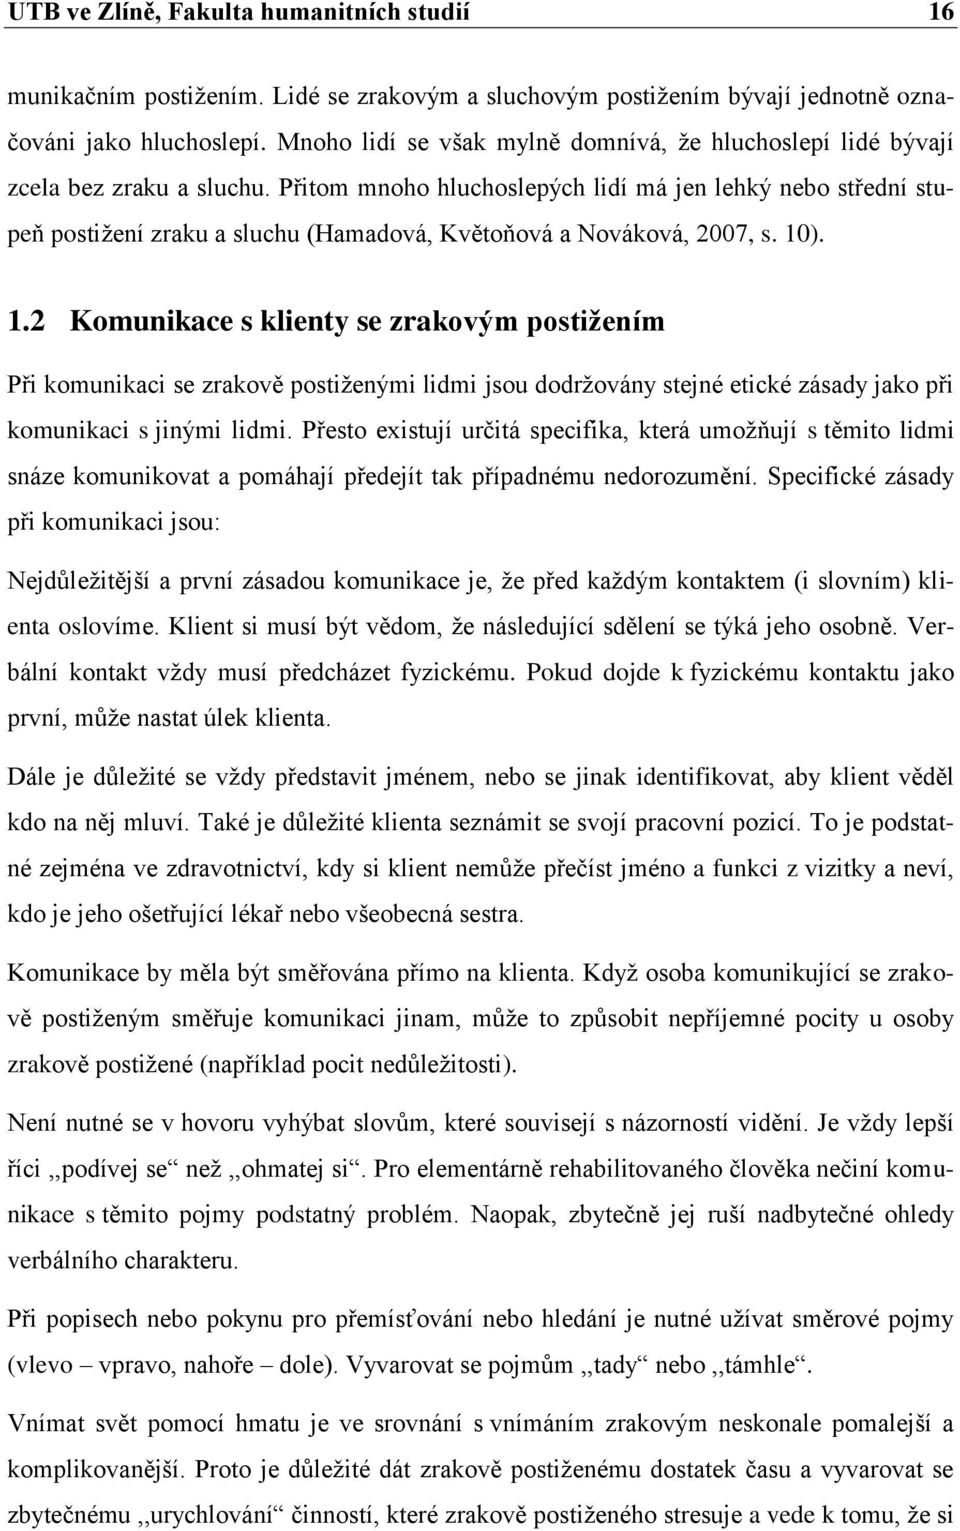 Přitom mnoho hluchoslepých lidí má jen lehký nebo střední stupeň postižení zraku a sluchu (Hamadová, Květoňová a Nováková, 2007, s. 10